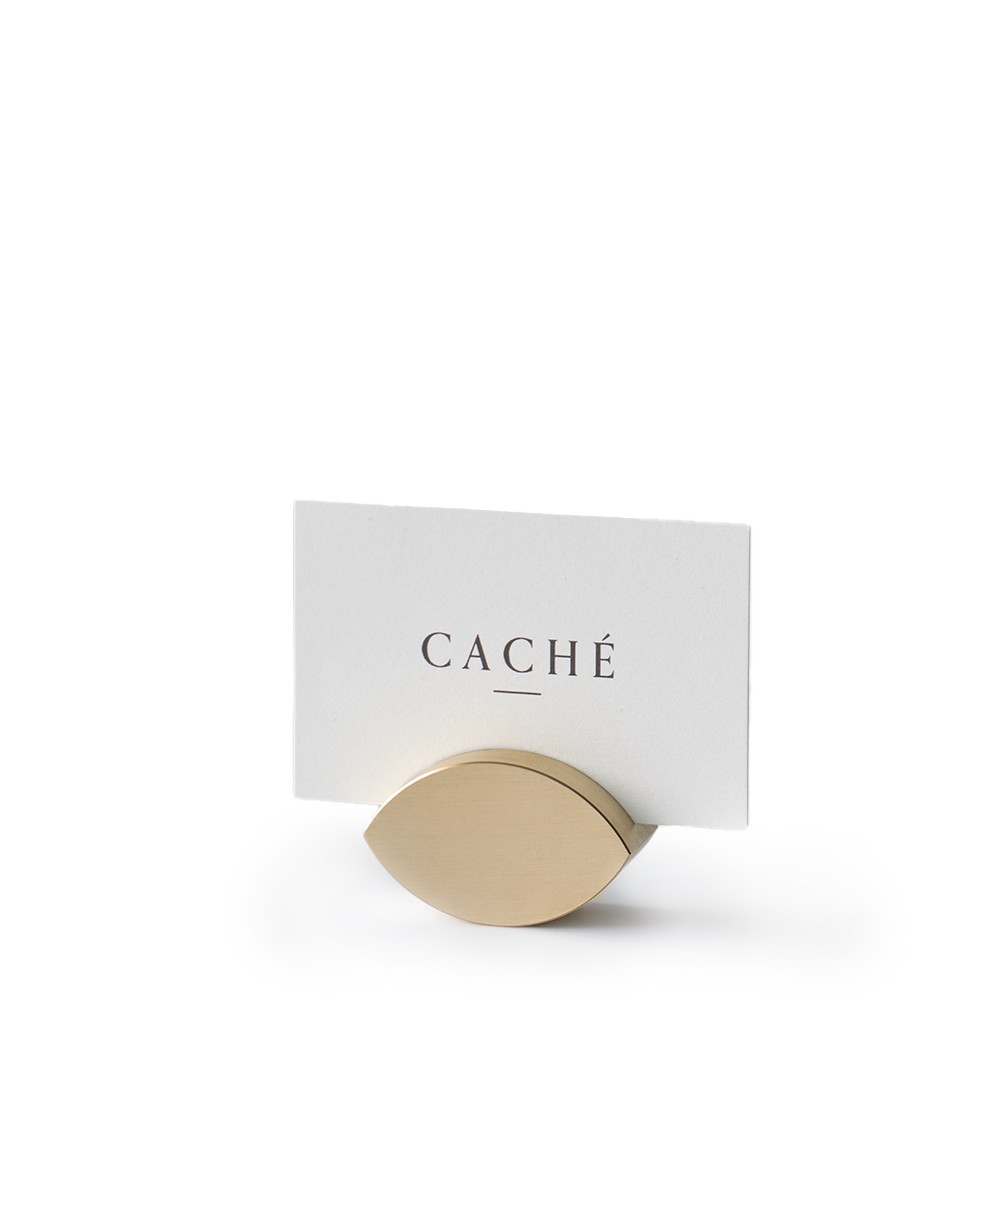 Produktbild des Buchgewichts und Kartenhalters „Almond“ aus Messing von der Marke CACHÉ im RAUM concept store 